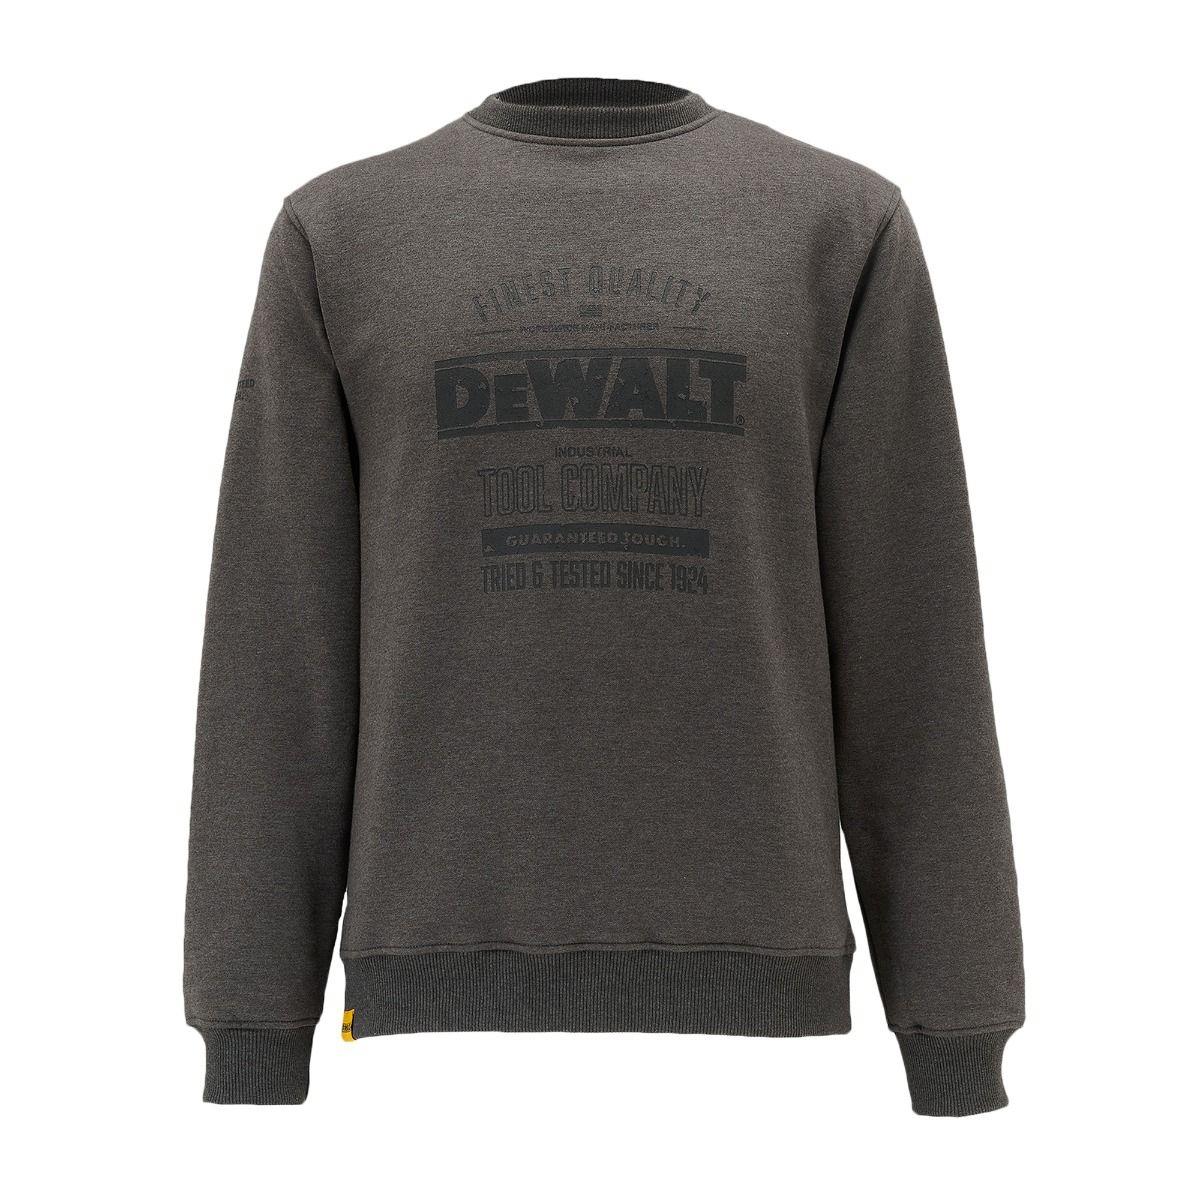 DeWalt Delaware grey crew neck work sweatshirt jumper